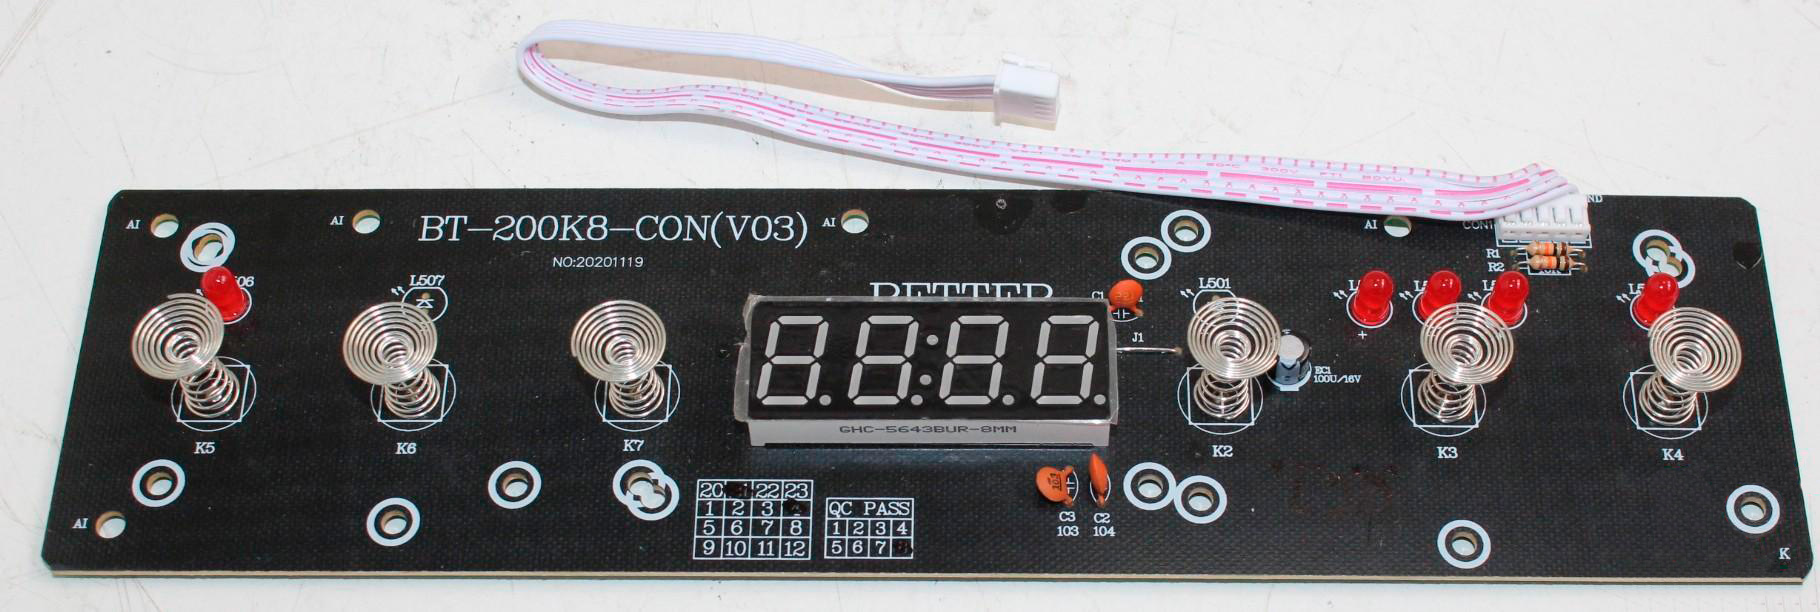 IP3500 D - 12 - E0603